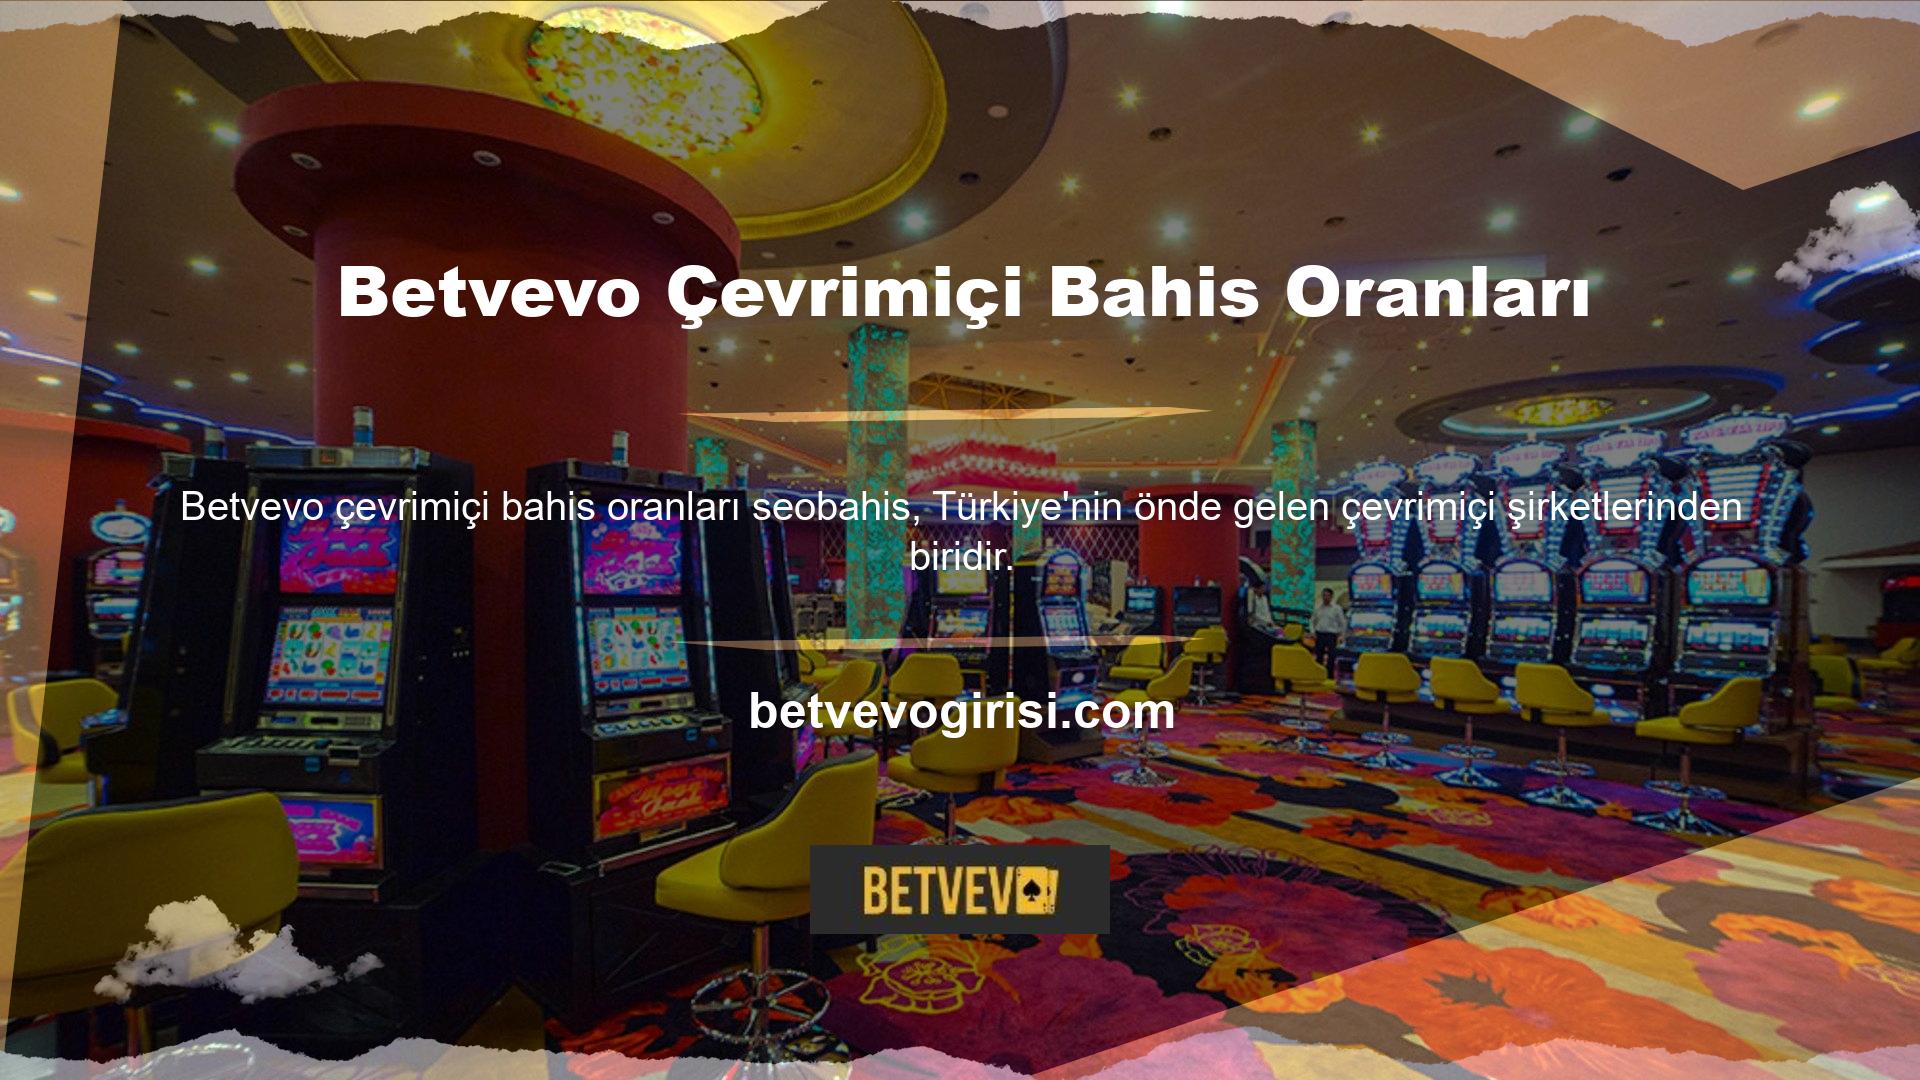 Betvevo, rulete dair her şeye ilgi duyan poker oyuncuları tarafından sevilen ve oldukça saygı duyulan, ülkemizin rulet şirketlerinden biridir